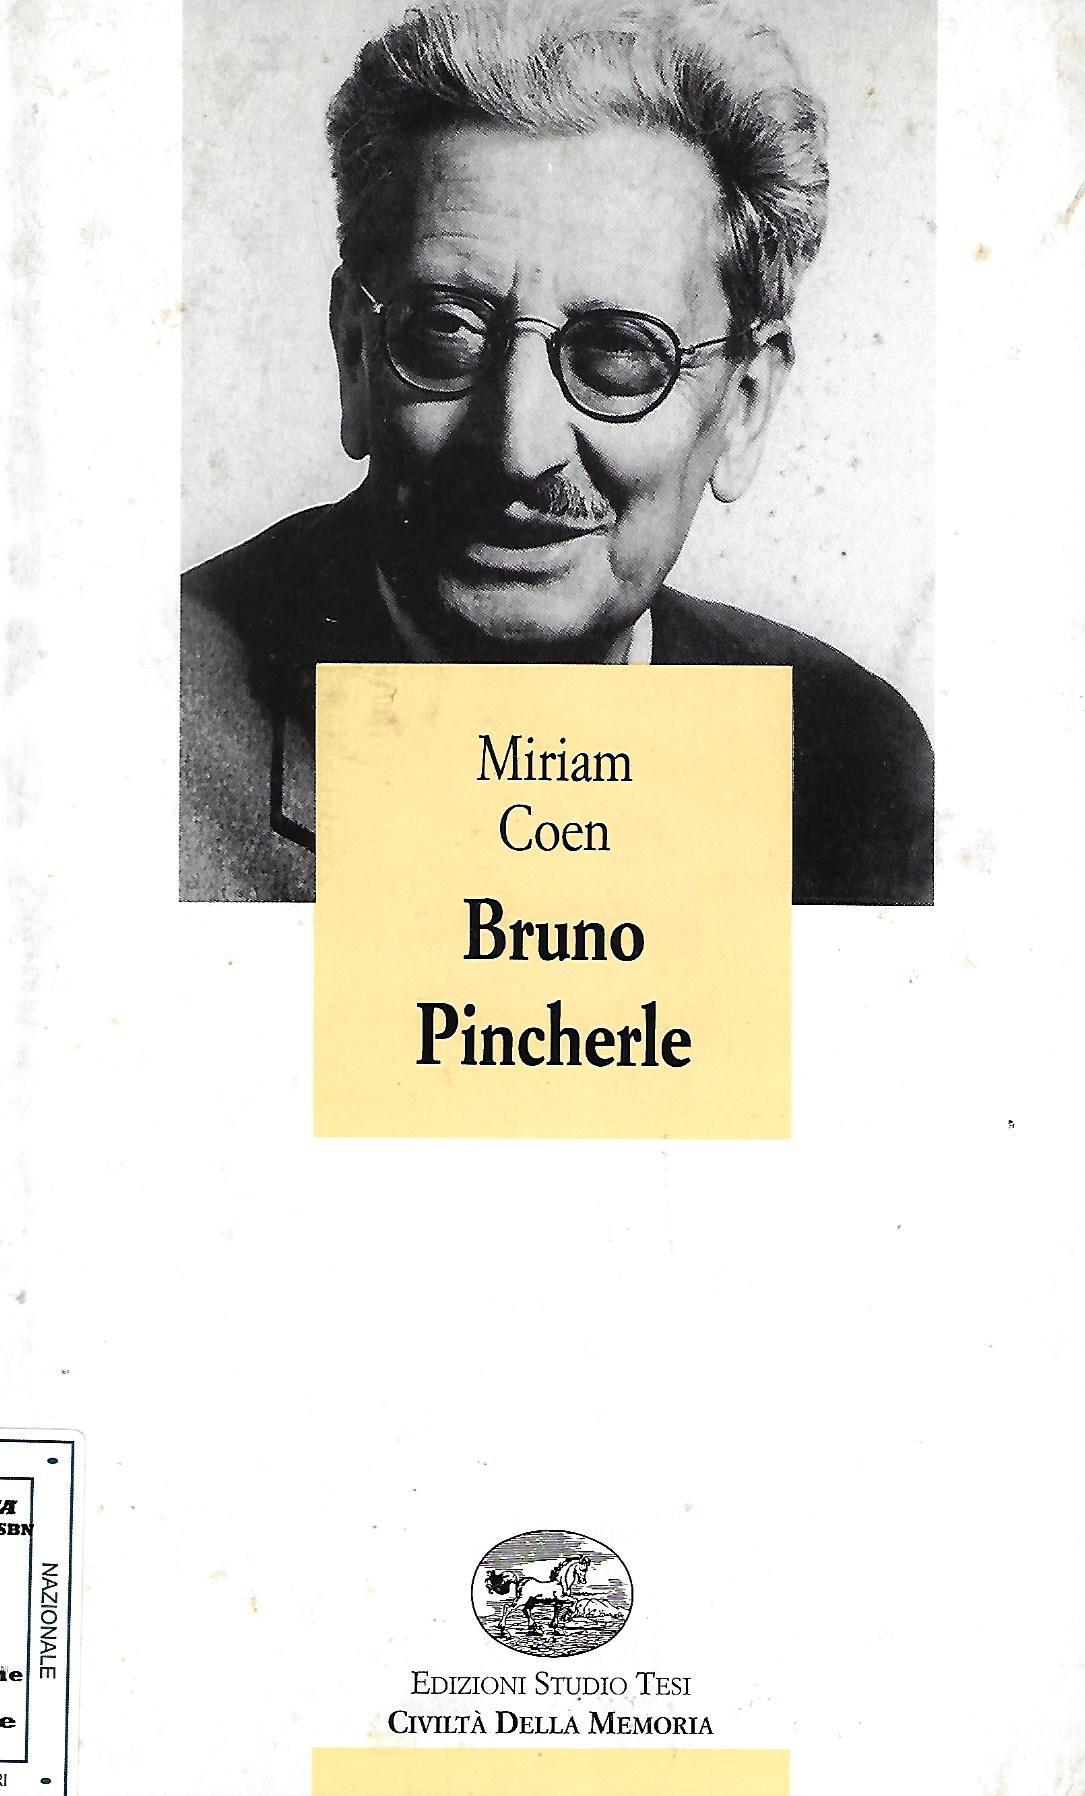 Bruno Pincherle